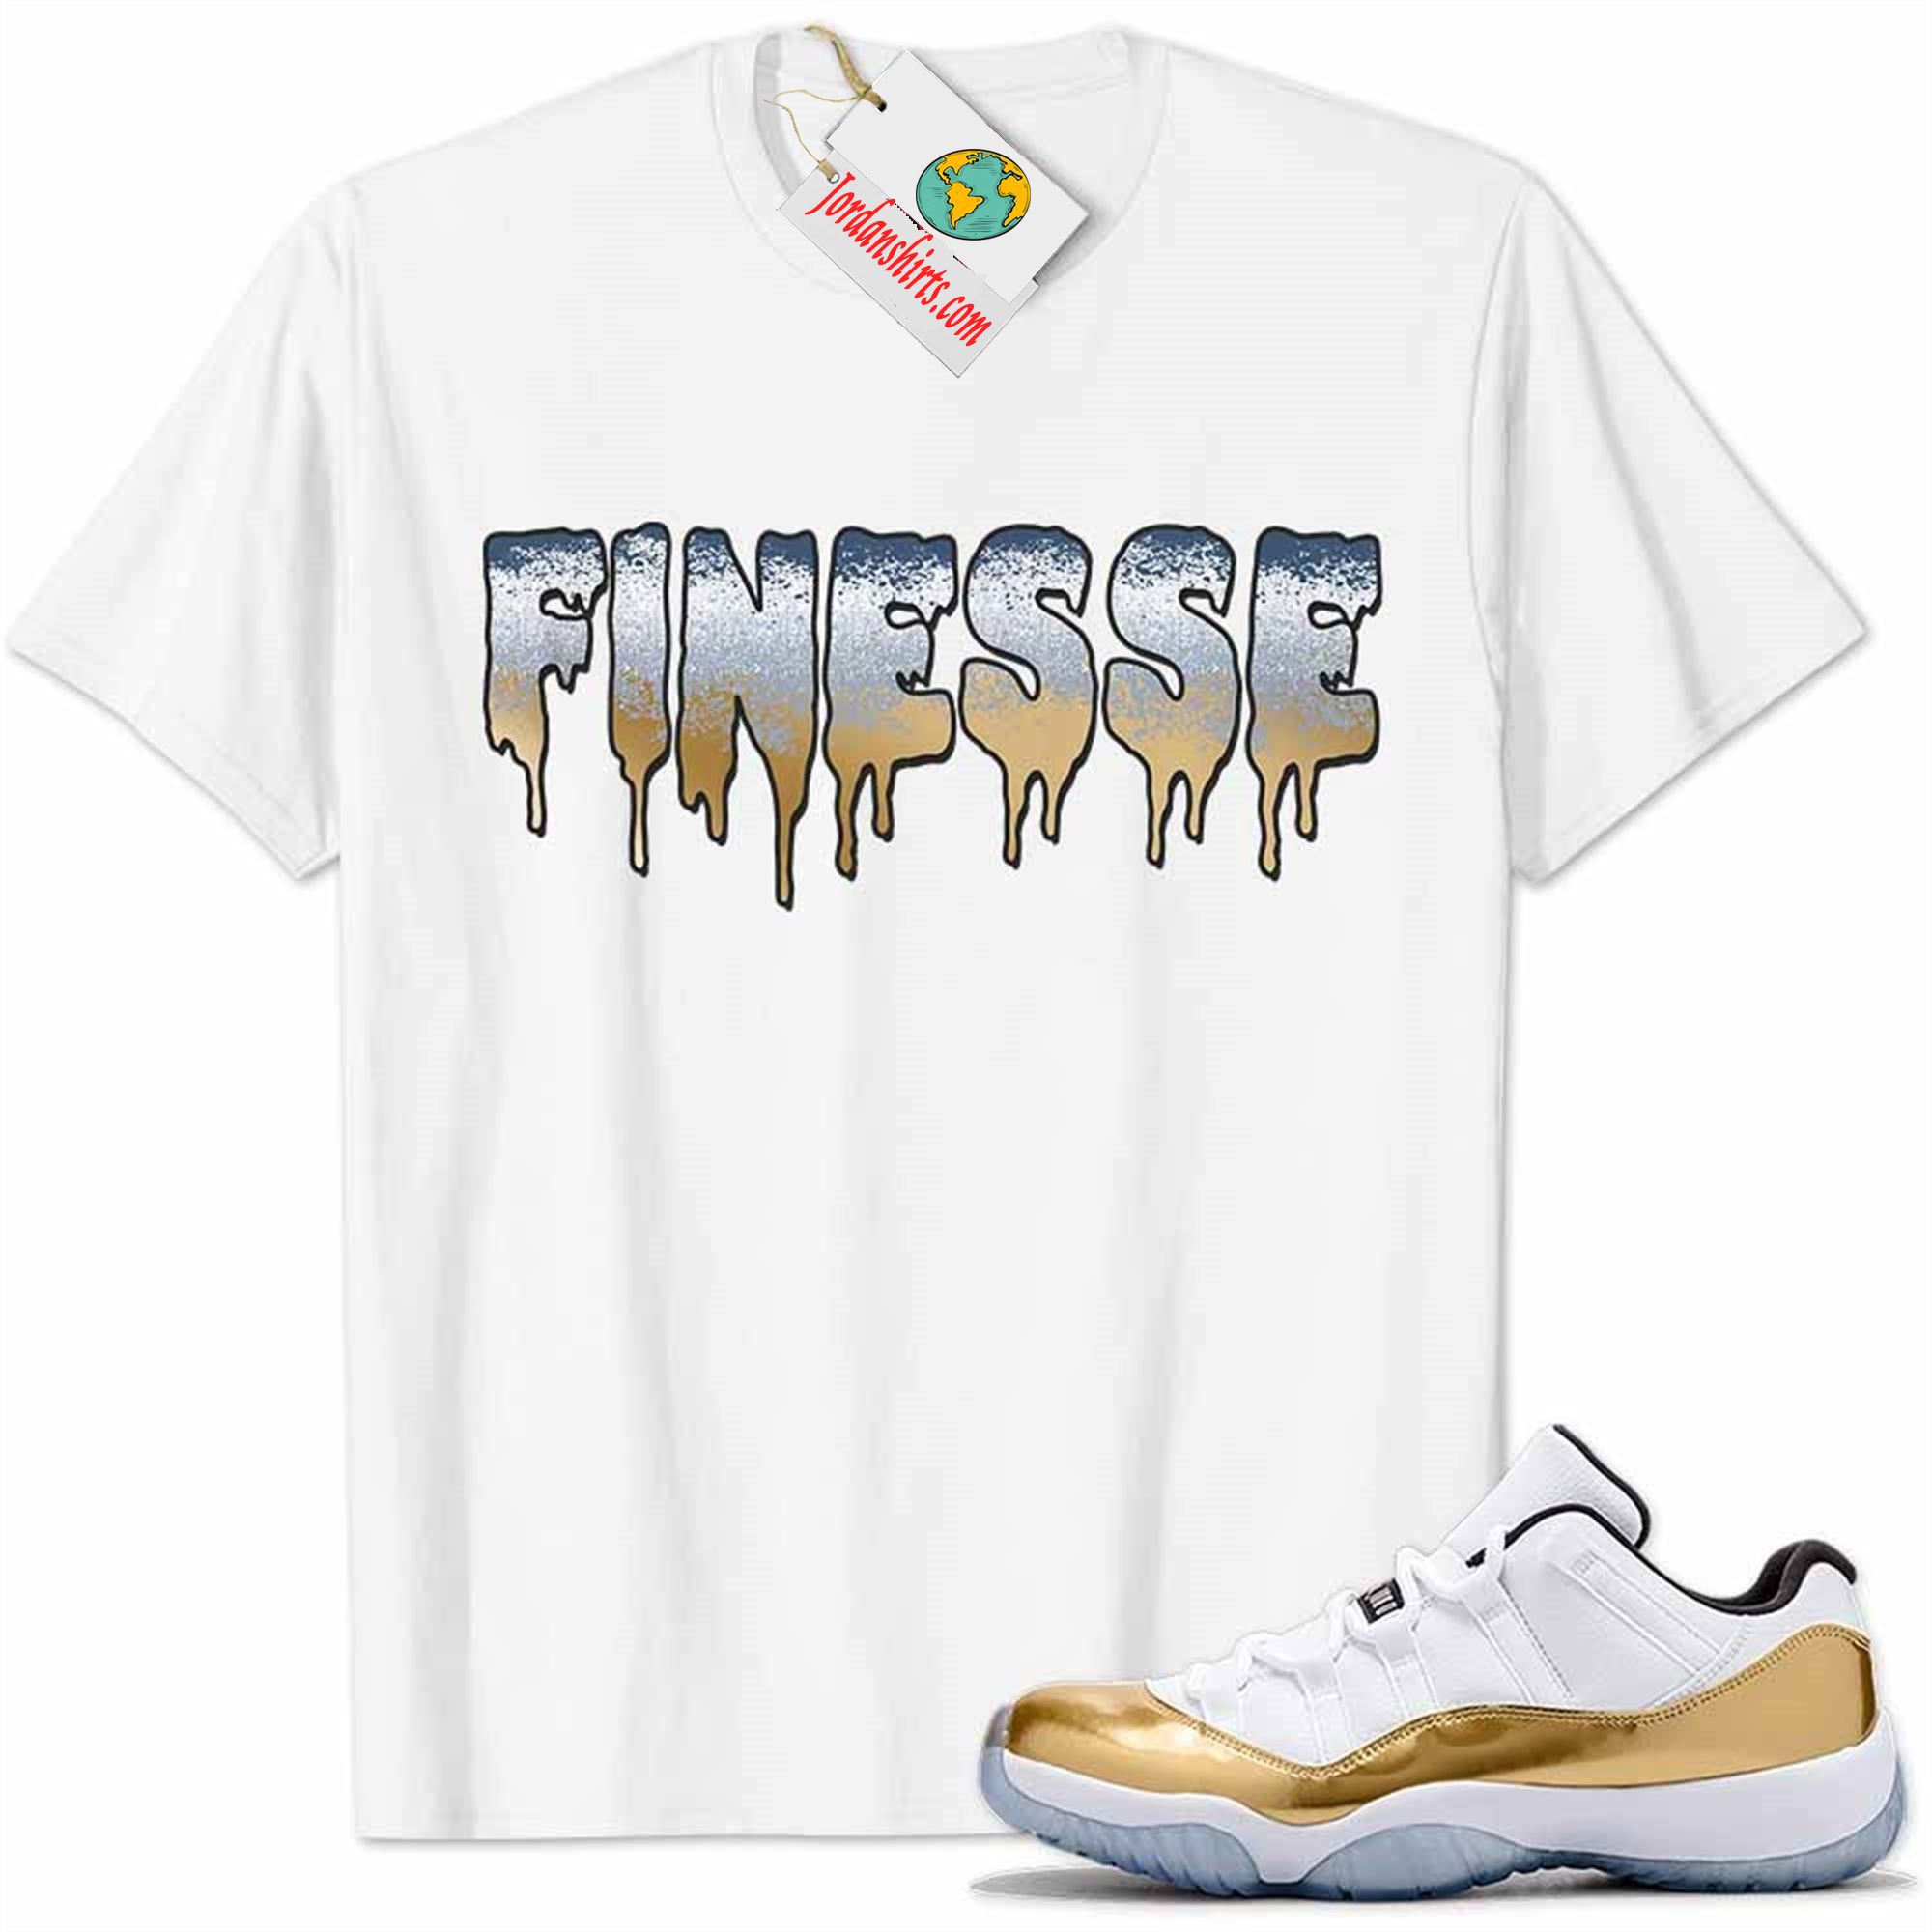 Jordan 11 Shirt, Jordan 11 Metallic Gold Shirt Finesse Drip White Plus Size Up To 5xl